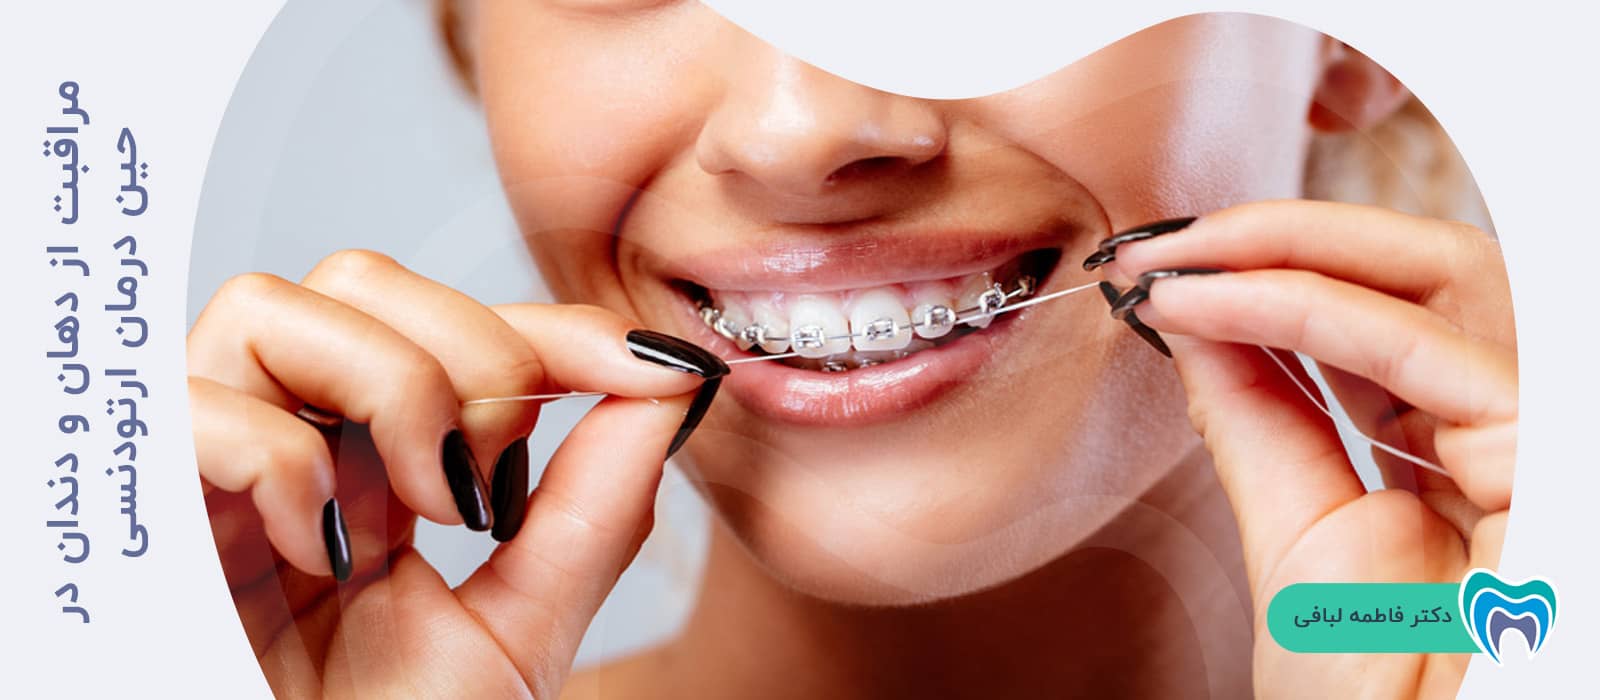 مراقبت از دهان و دندان در حین درمان ارتودنسی